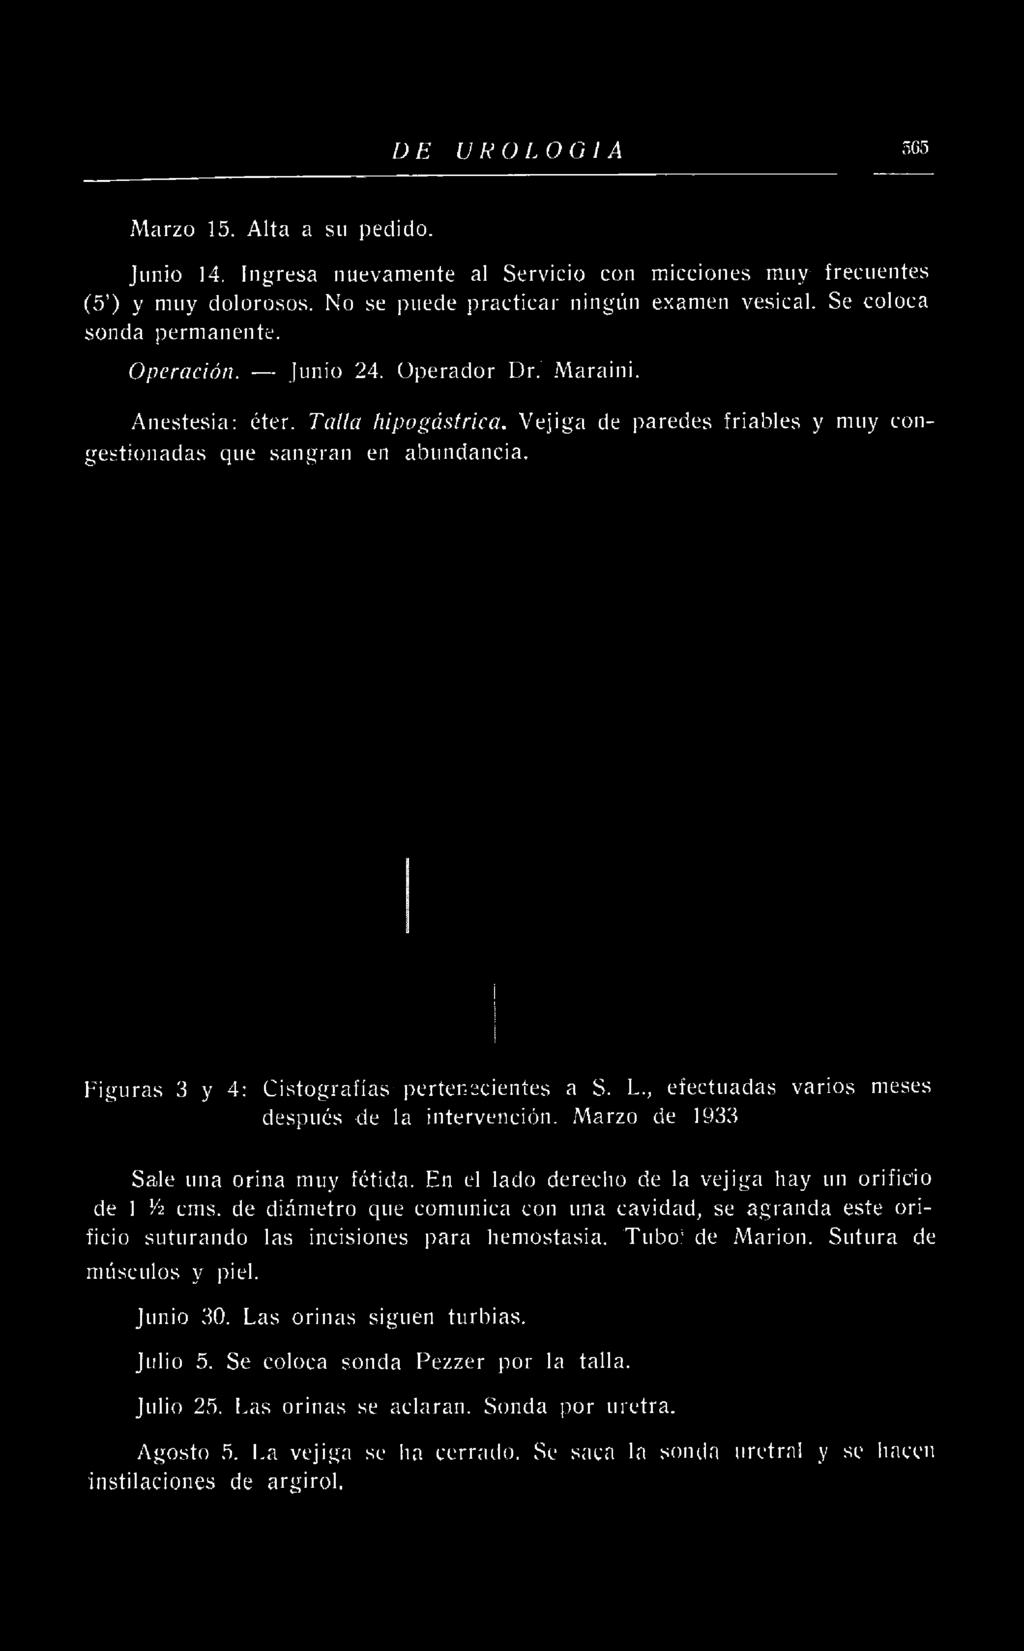 Figuras 3 y 4: Cistografías pertenecientes a S. L., efectuadas varios después de la intervención. Marzo de 1933 meses Sale una orina muy fétida.